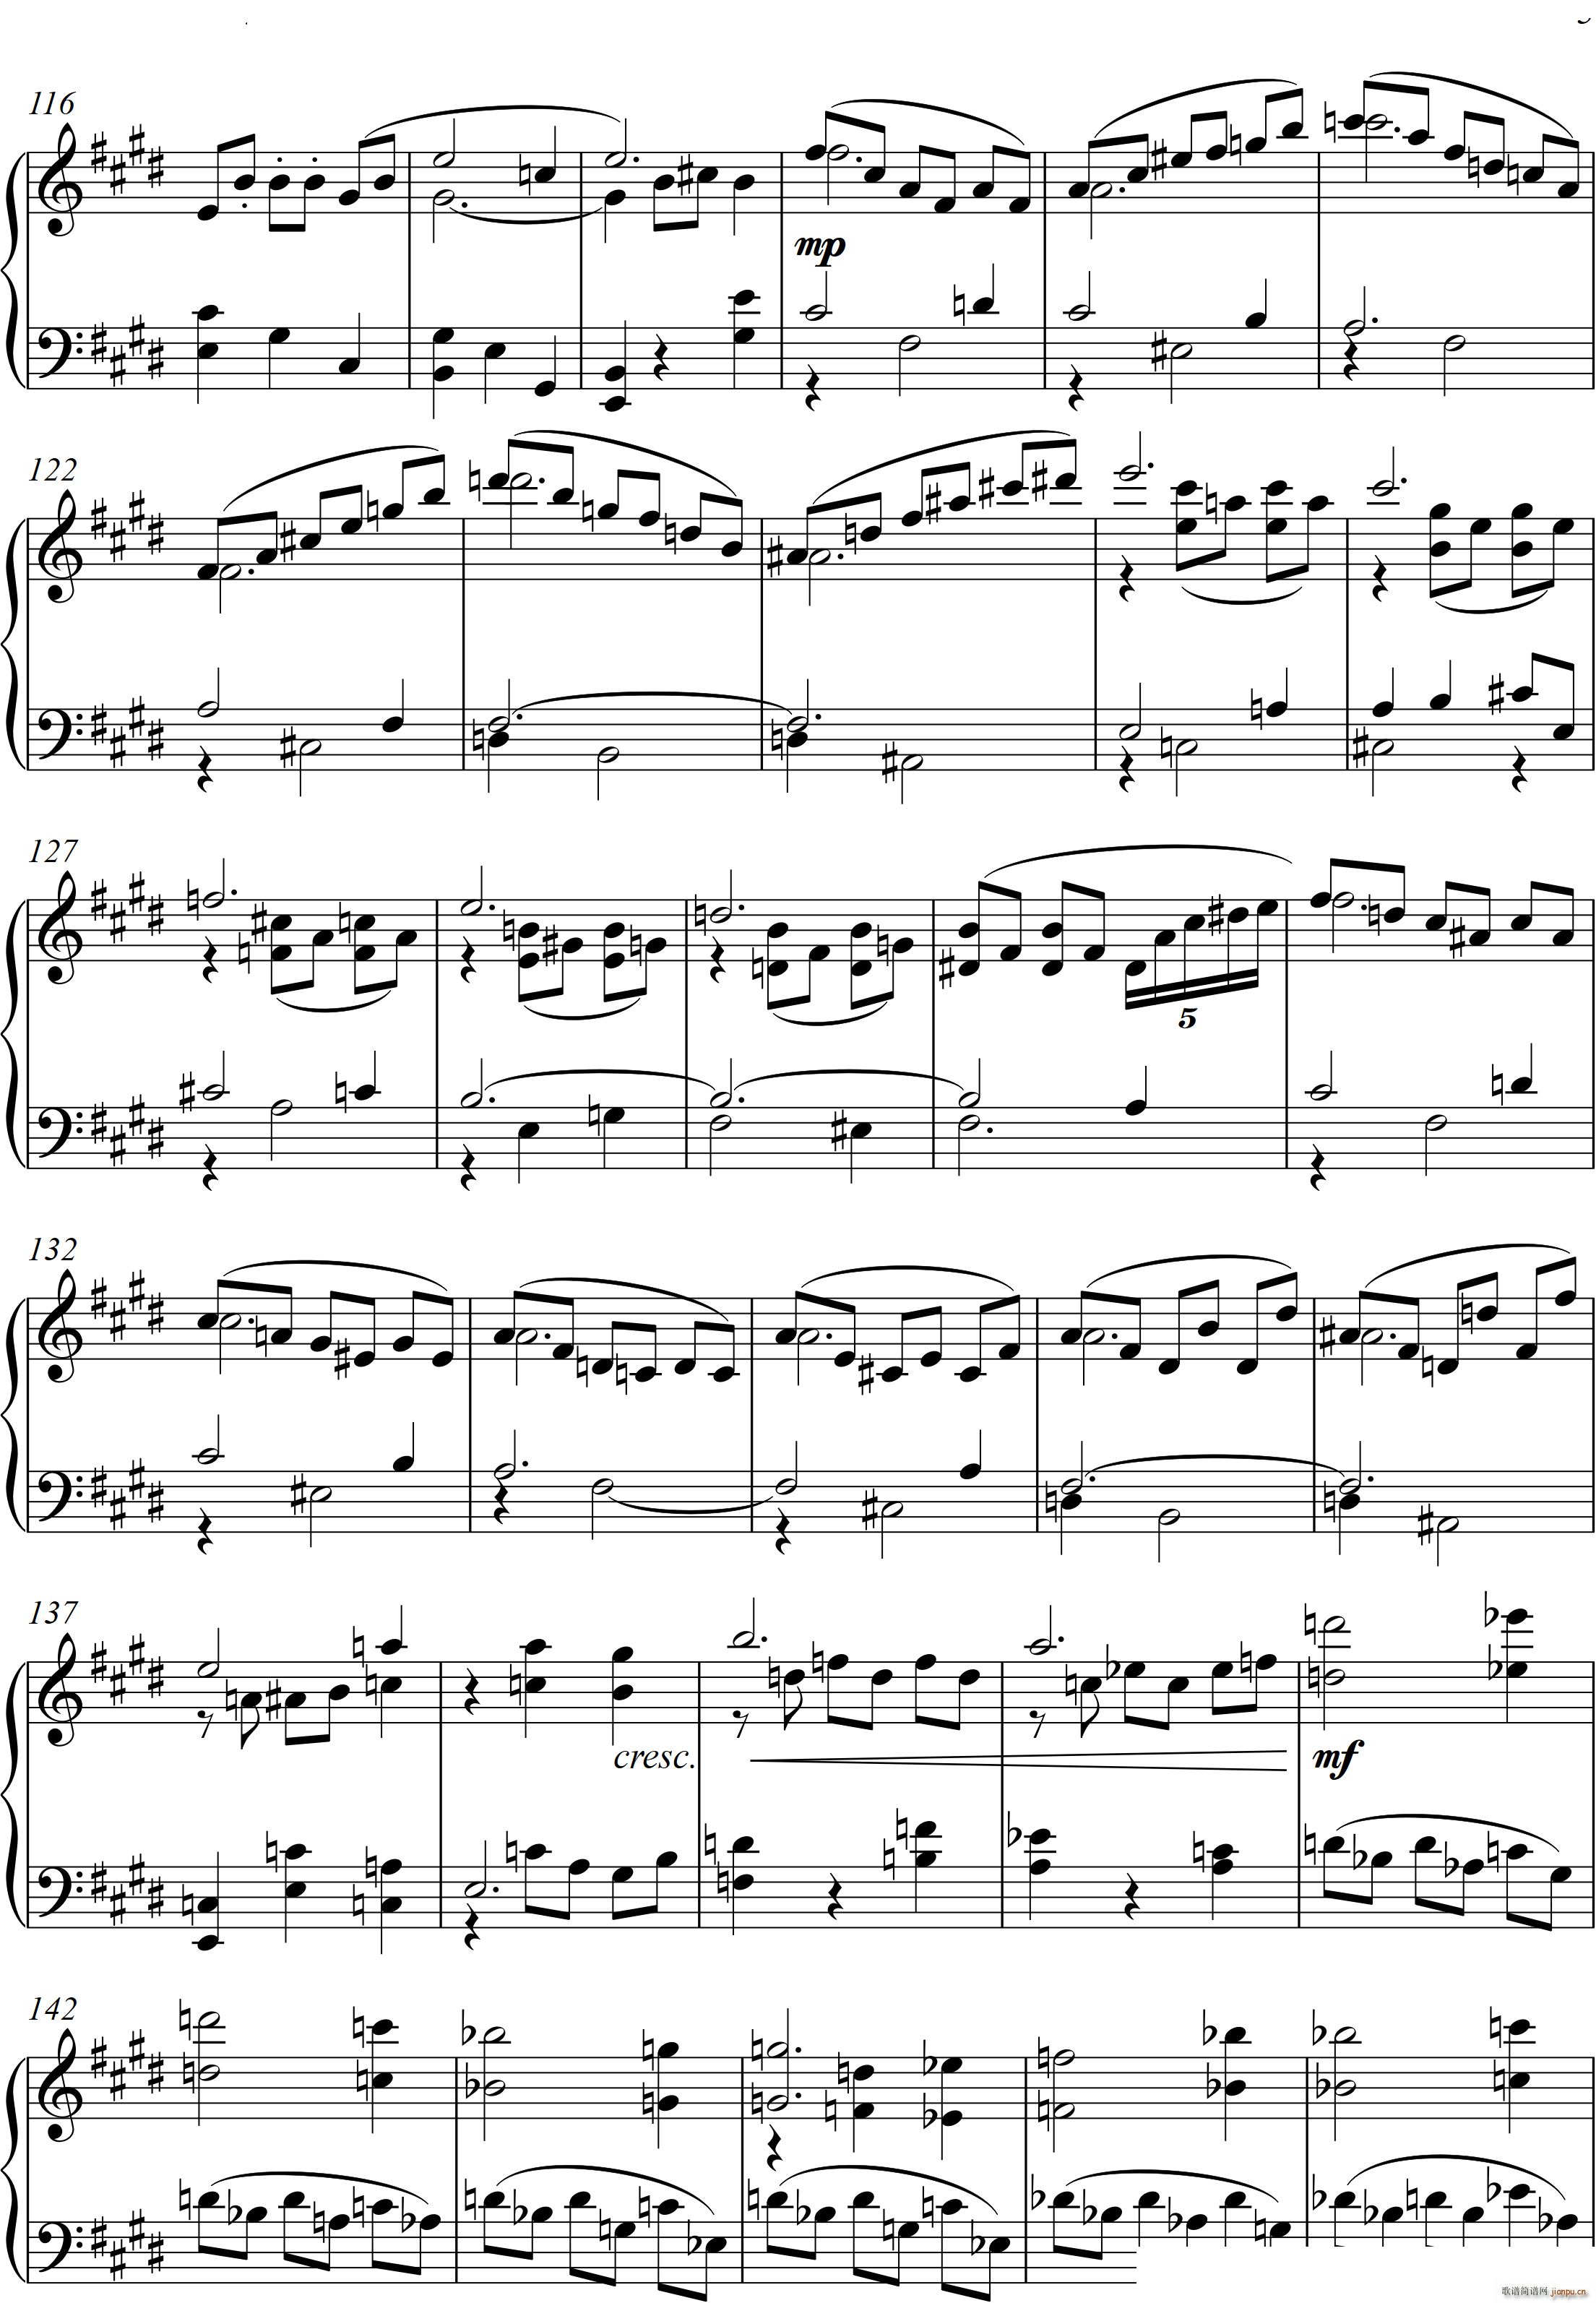 第22钢琴奏鸣曲 信仰 Piano Sonata No`22四个乐章(钢琴谱)15